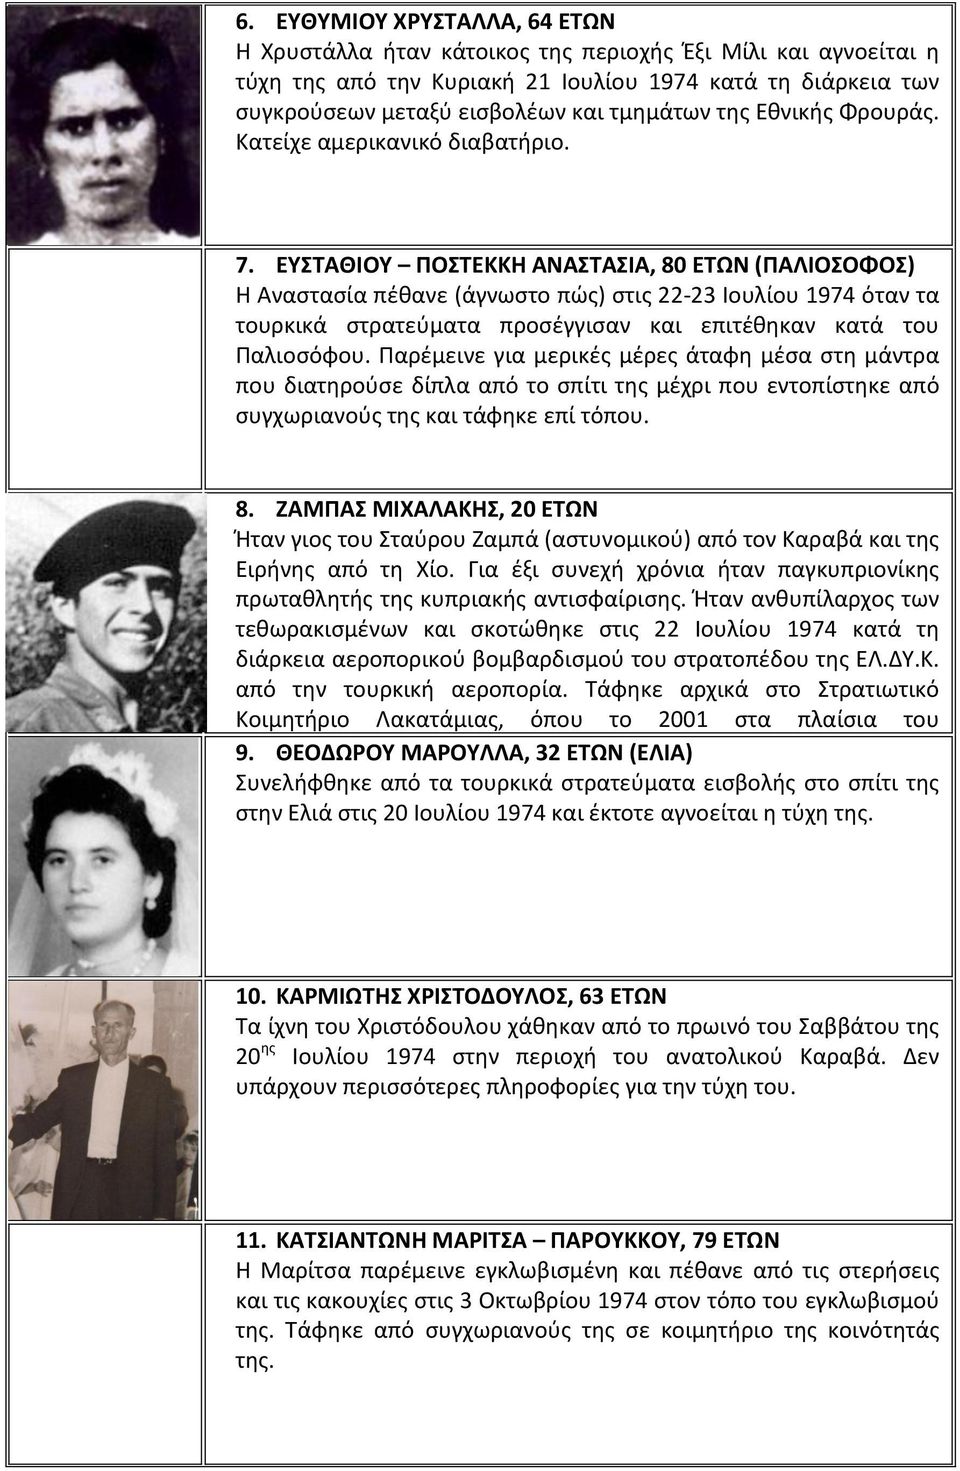 ΕΥΣΤΑΘΙΟΥ ΠΟΣΤΕΚΚΗ ΑΝΑΣΤΑΣΙΑ, 80 ΕΤΩΝ (ΠΑΛΙΟΣΟΦΟΣ) Η Αναστασία πέθανε (άγνωστο πώς) στις 22-23 Ιουλίου 1974 όταν τα τουρκικά στρατεύματα προσέγγισαν και επιτέθηκαν κατά του Παλιοσόφου.